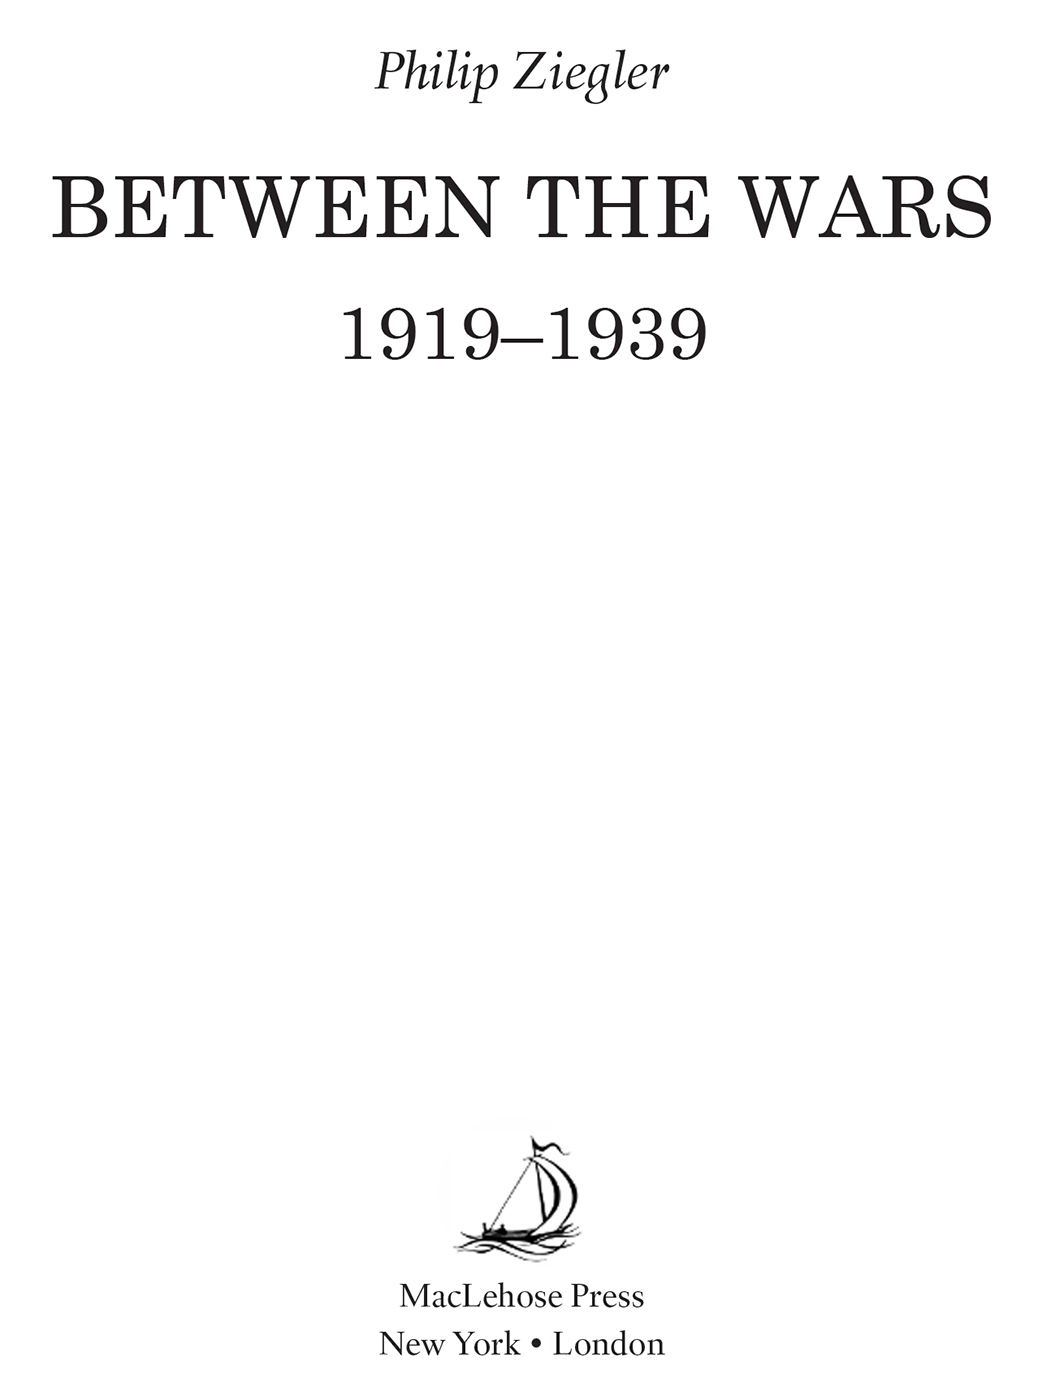 Between the Wars - image 2